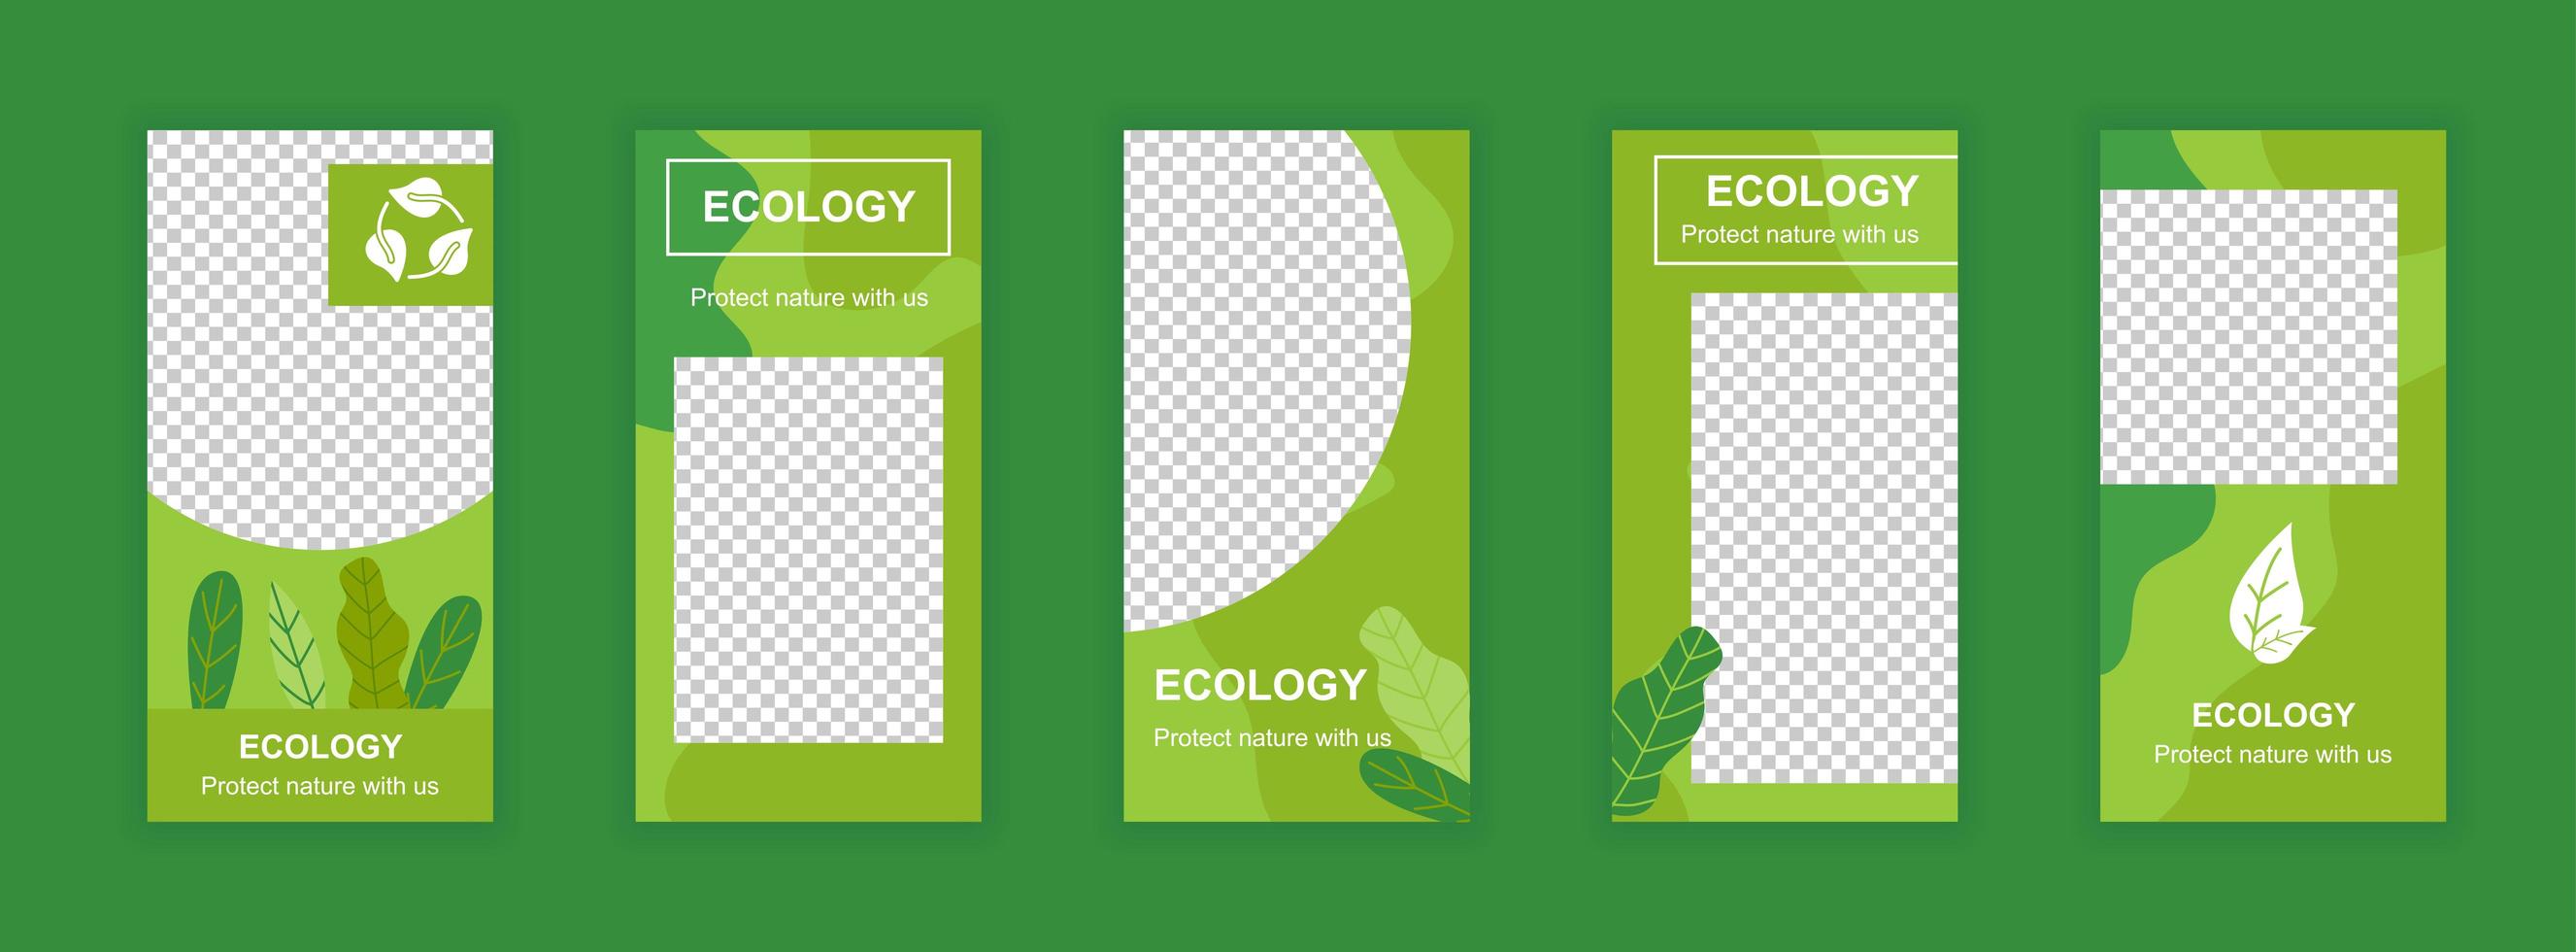 Plantillas de historias de redes sociales editables de ecología y medio ambiente. vector